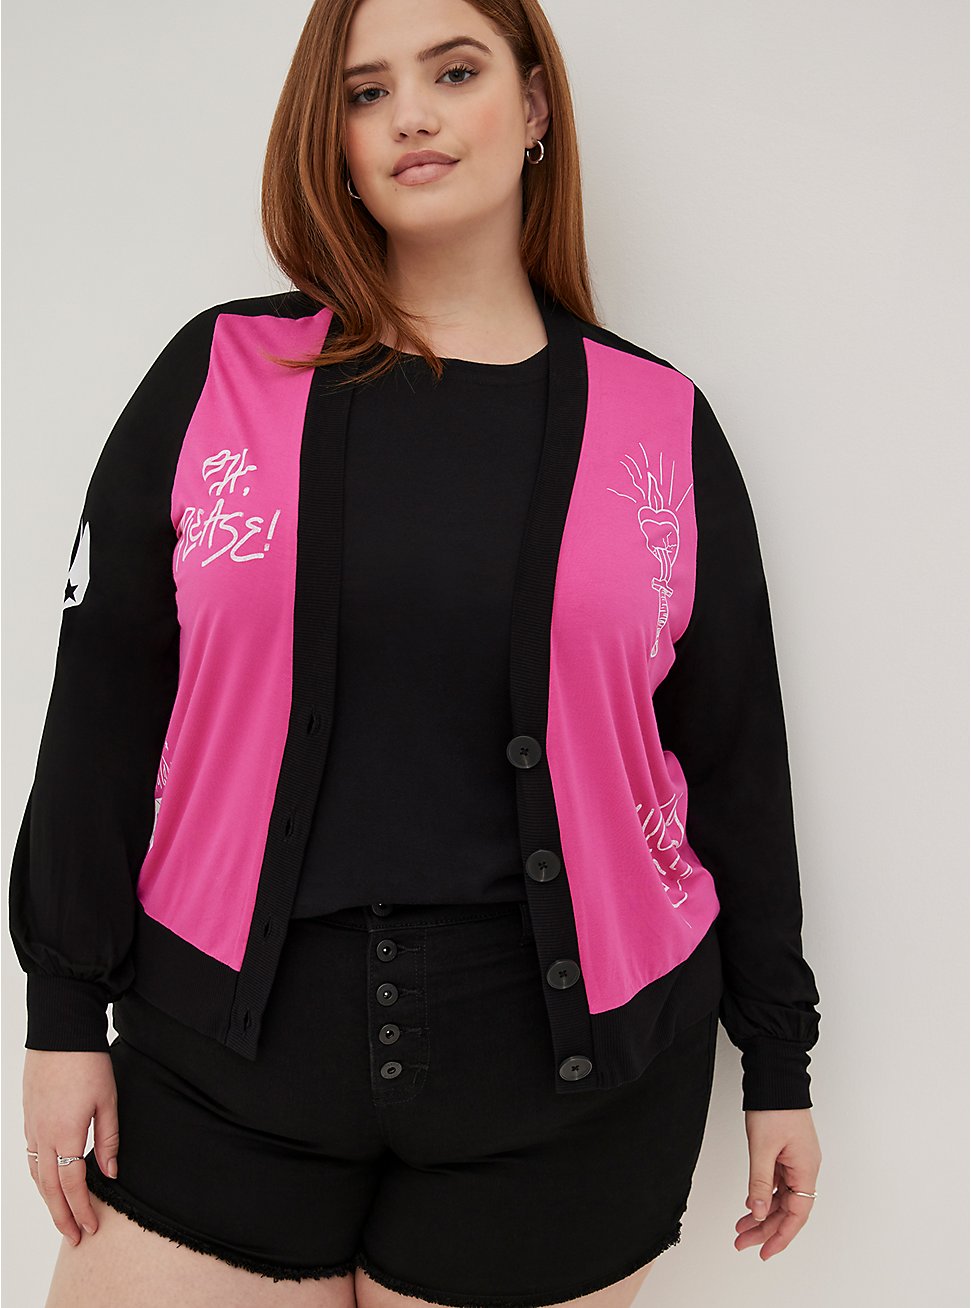 LoveSick Button-Front Cardigan - Super Soft Black & Pink, BLACK, hi-res